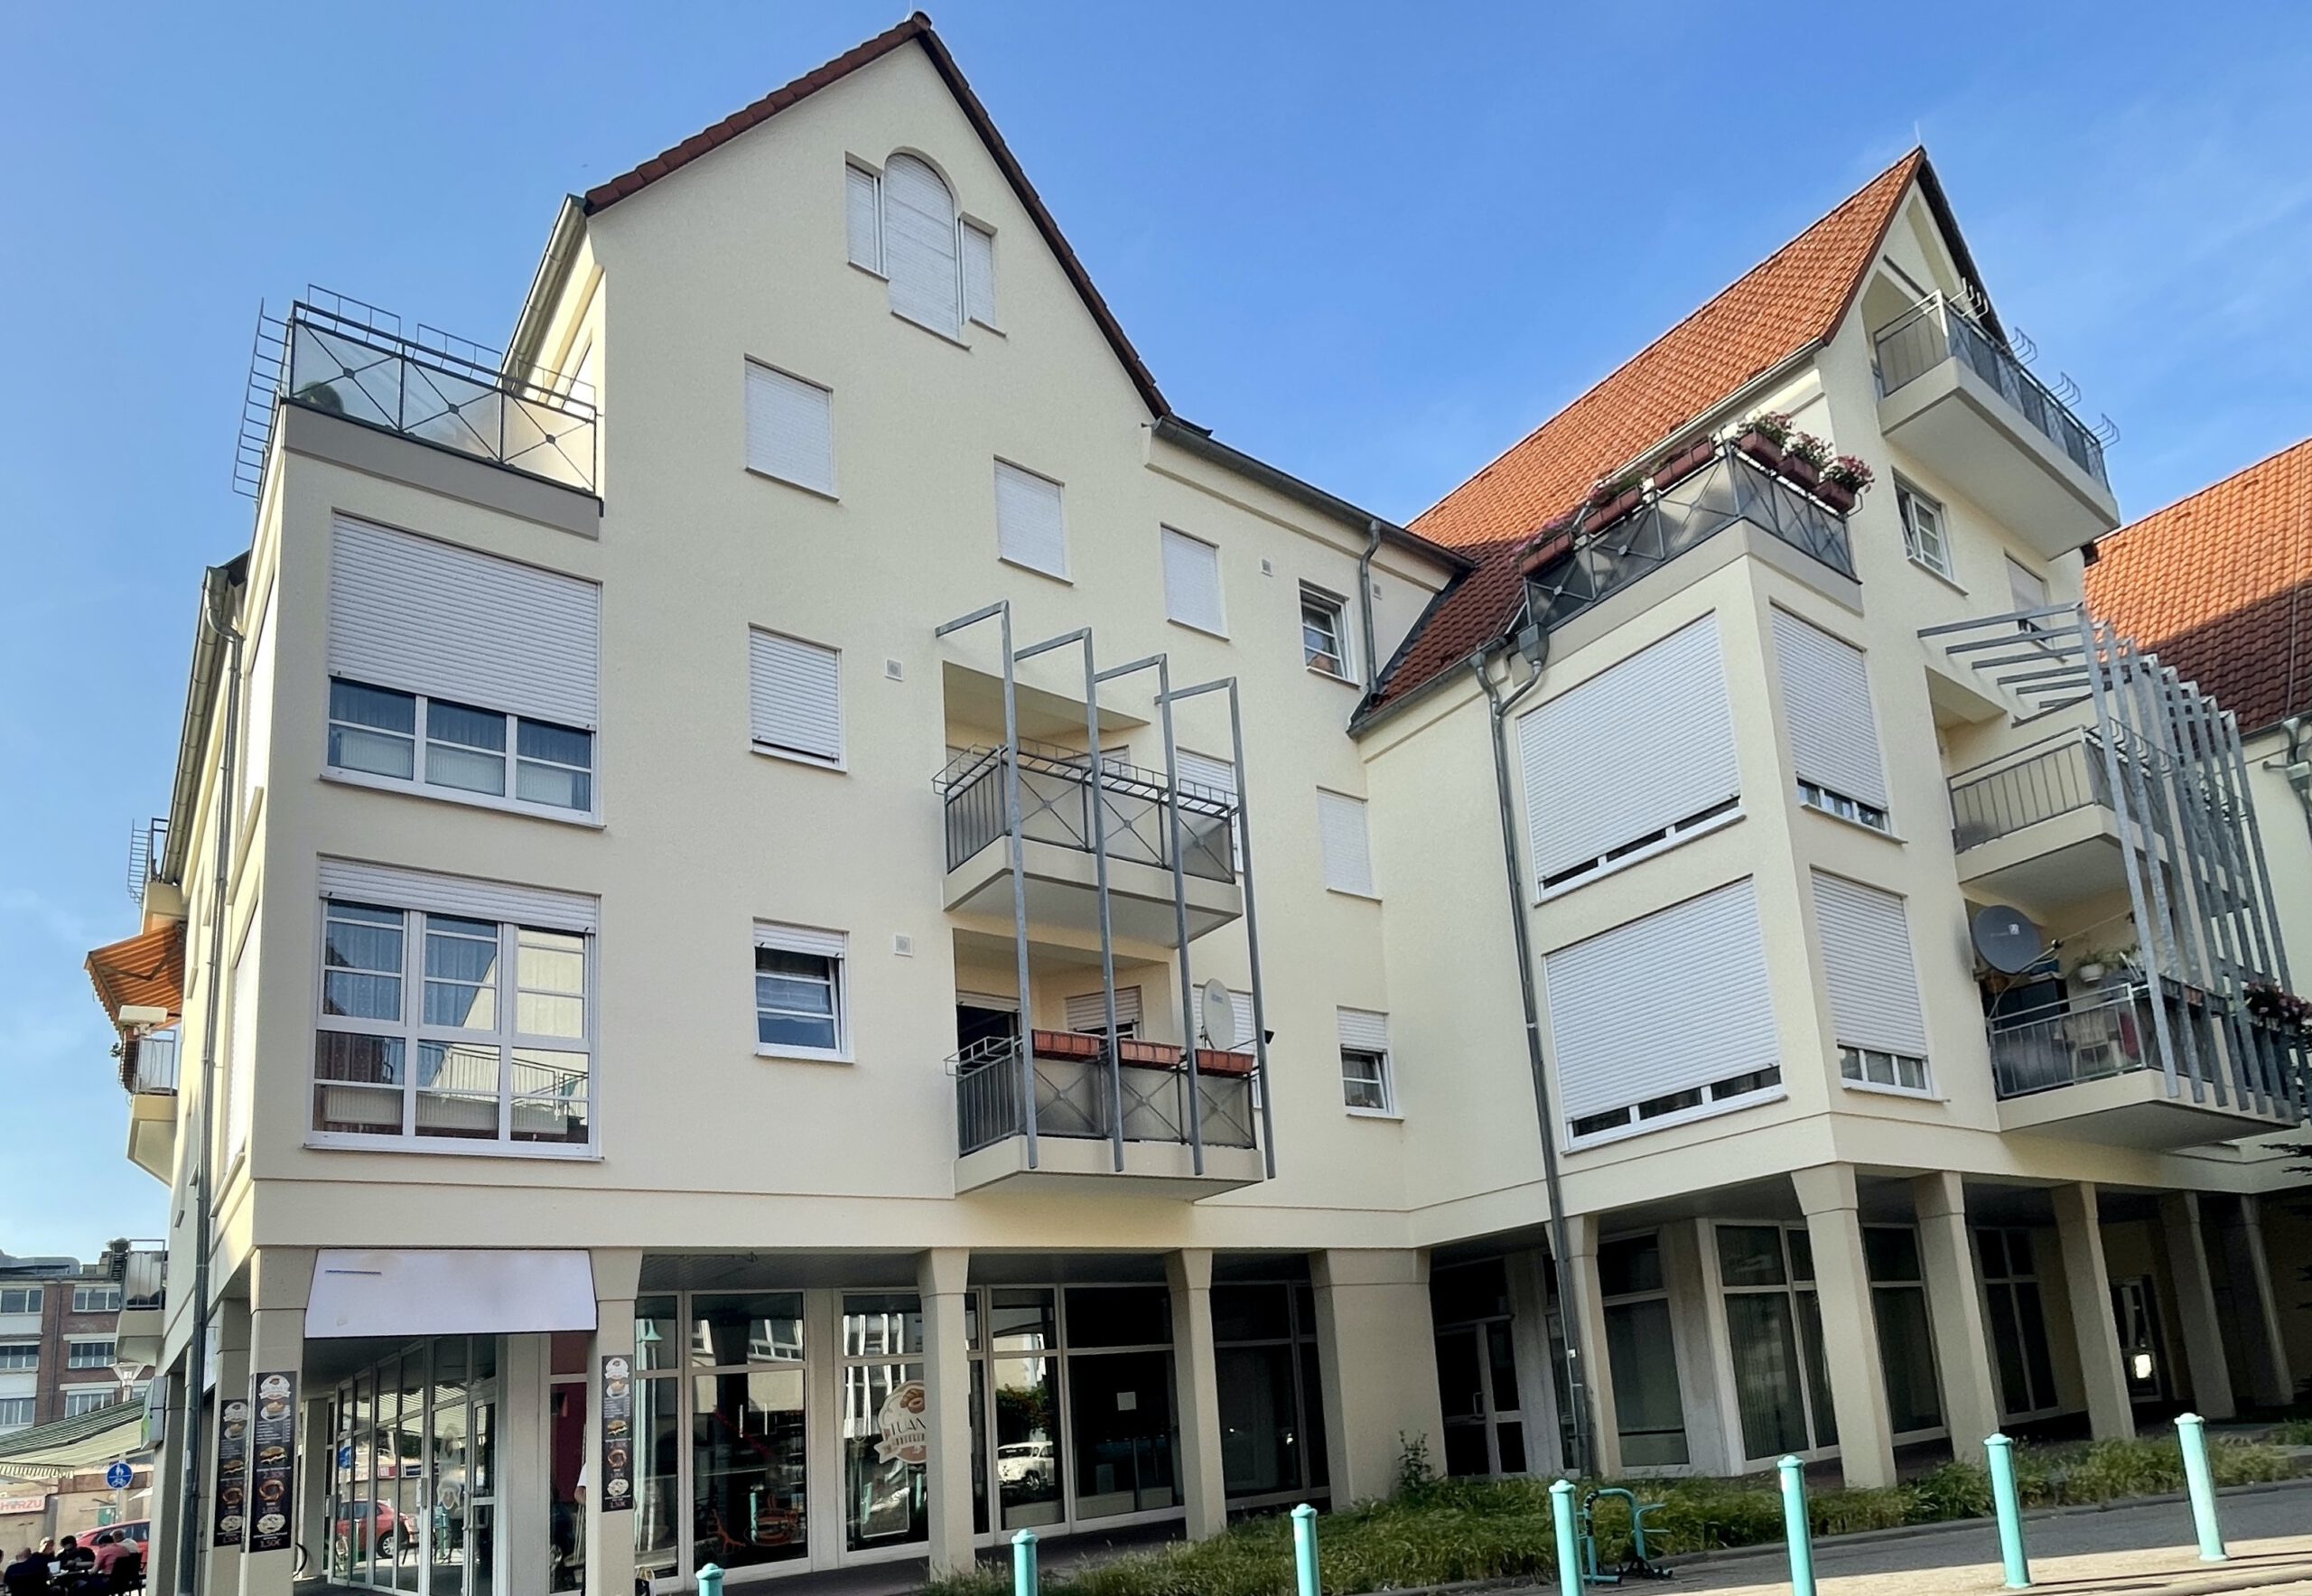 Schöne 3-Zimmer-Wohnung in zentraler Lage von Rüsselsheim am Main